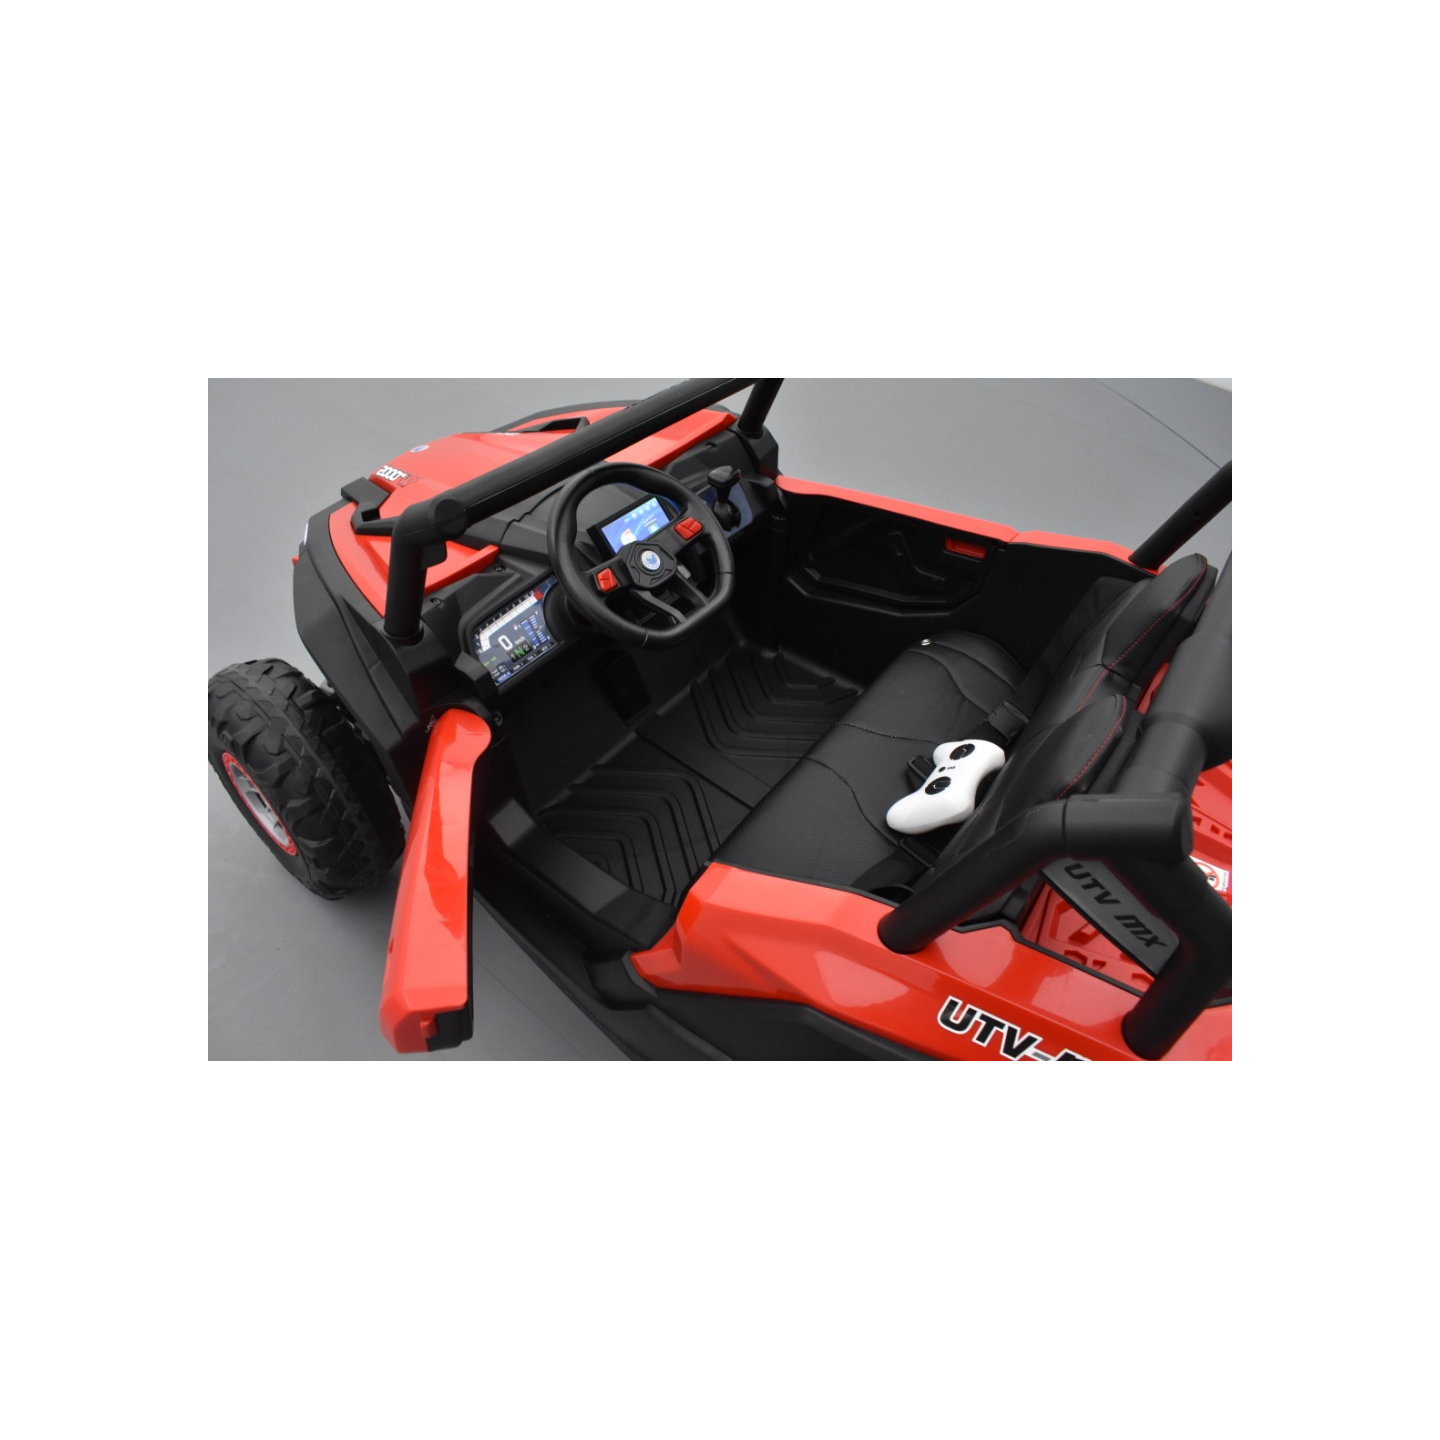 Buggy Scorpion 24 Volts 7Ah rouge, 4 moteurs de 60 watts, buggy deux places, buggy électrique enfant